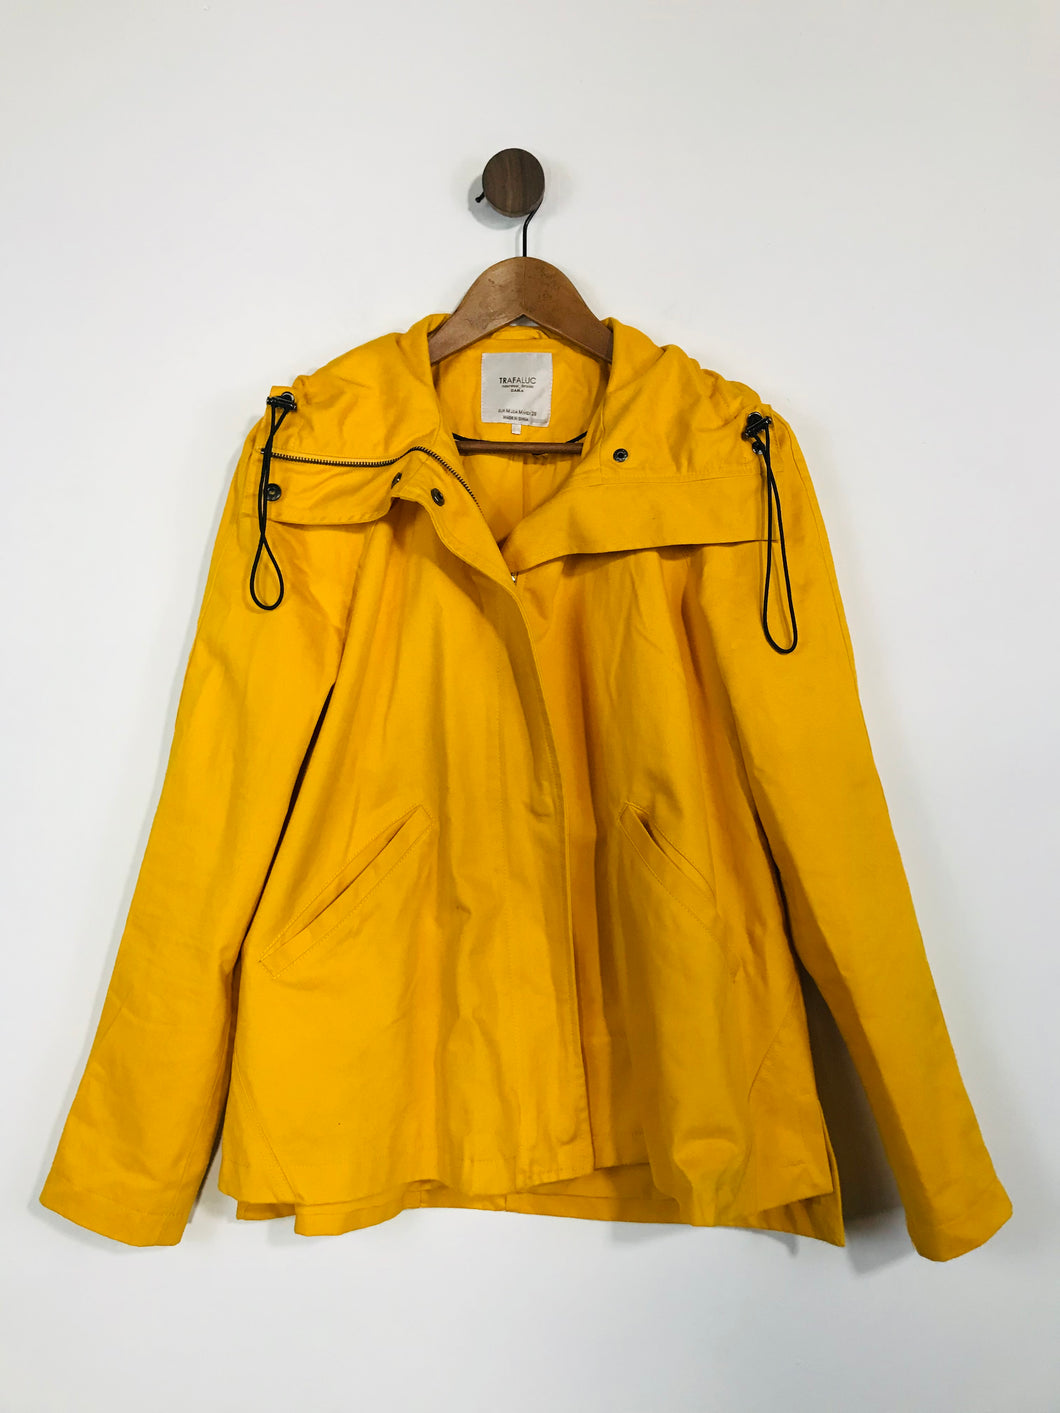 Zara Women's Cotton High Collar Anorak Jacket | M UK10-12 | Yellow